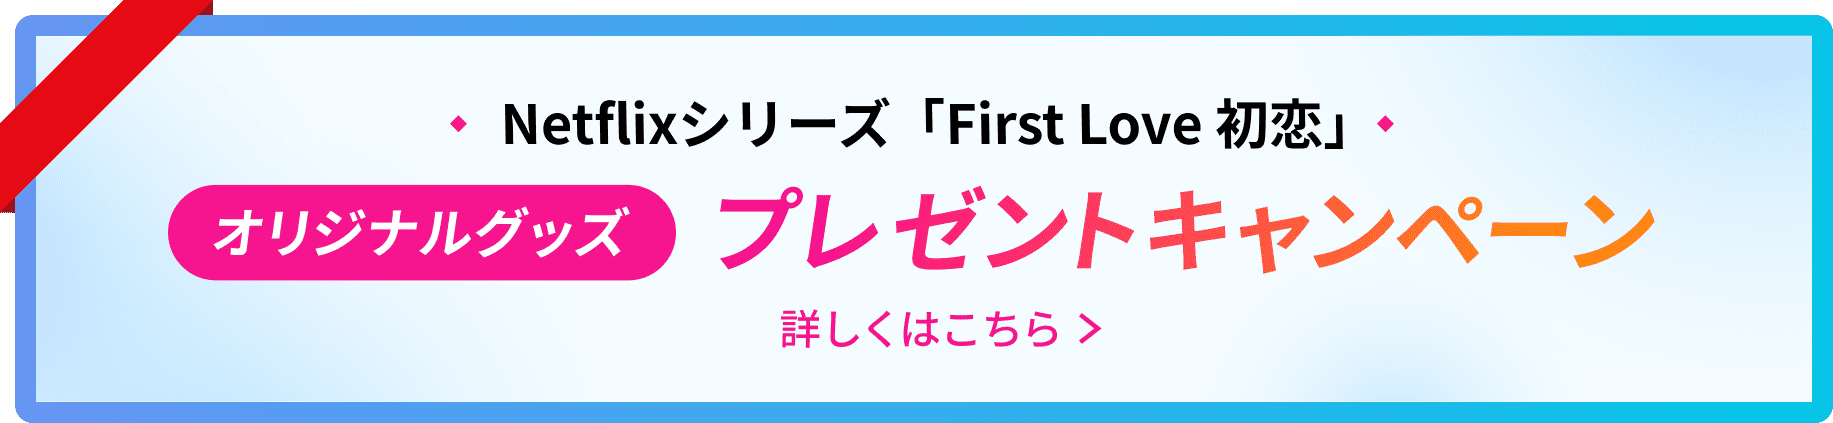 Netflixシリーズ First Love 初恋 オリジナルグッズ プレゼントキャンペーン 詳しくはこちら